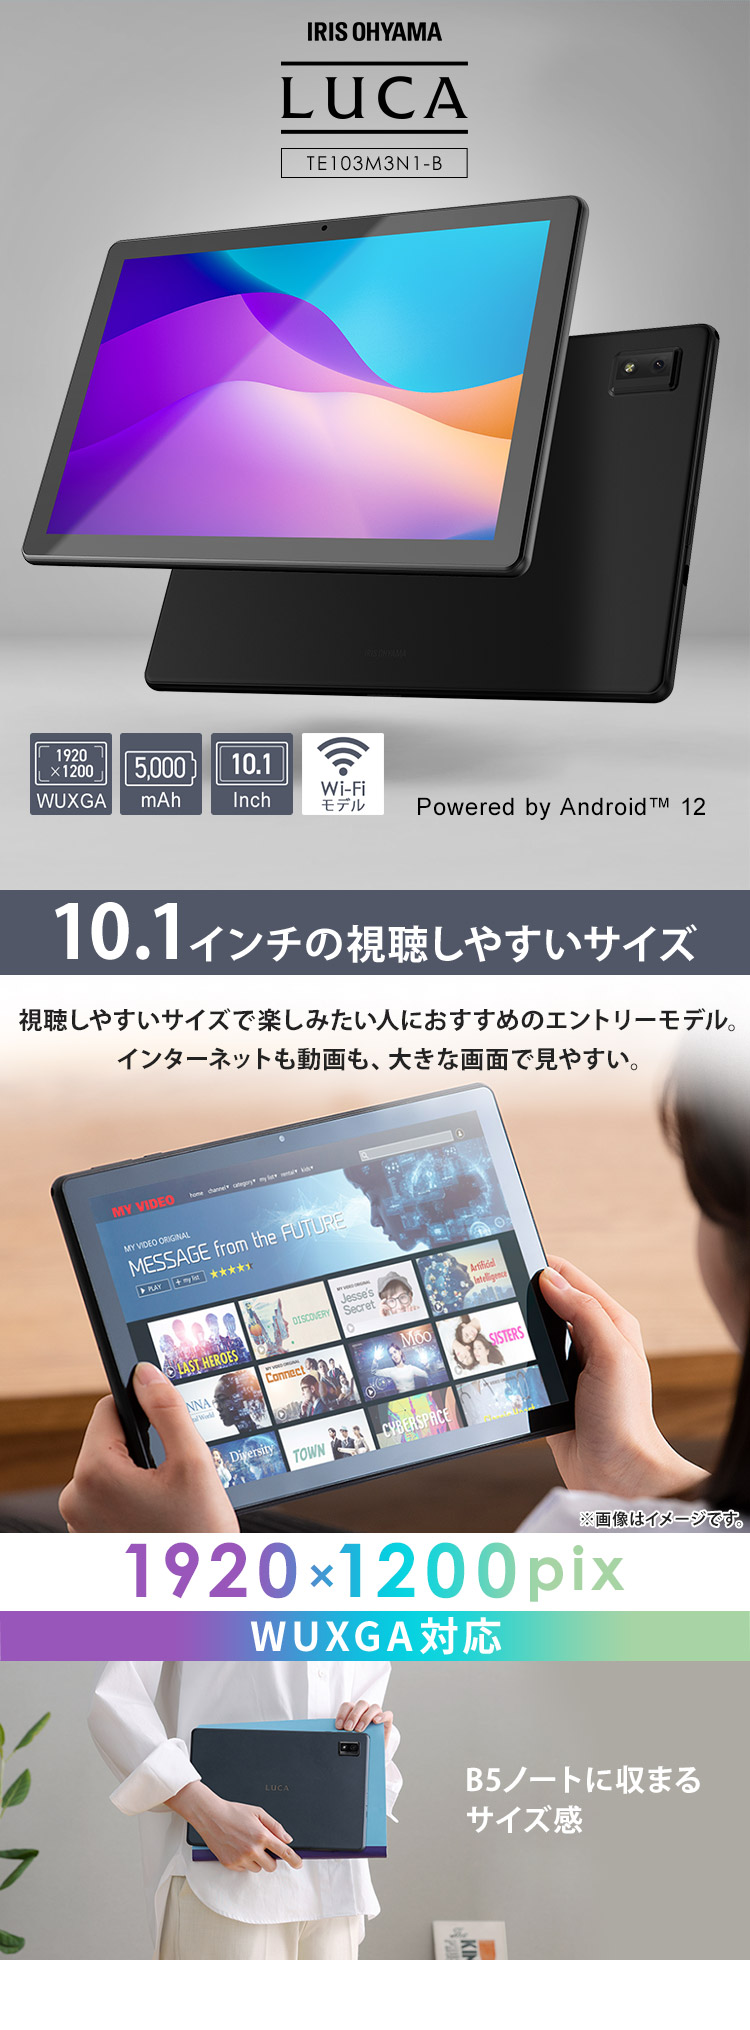 タブレット 10インチ おすすめ 安い android 本体 タブレットアンドロイド wifiモデル アイリスオーヤマ Android12  Bluetooth 高画質 コンパクト TE103M3N1 :102902:ウエノ電器 !店 通販 